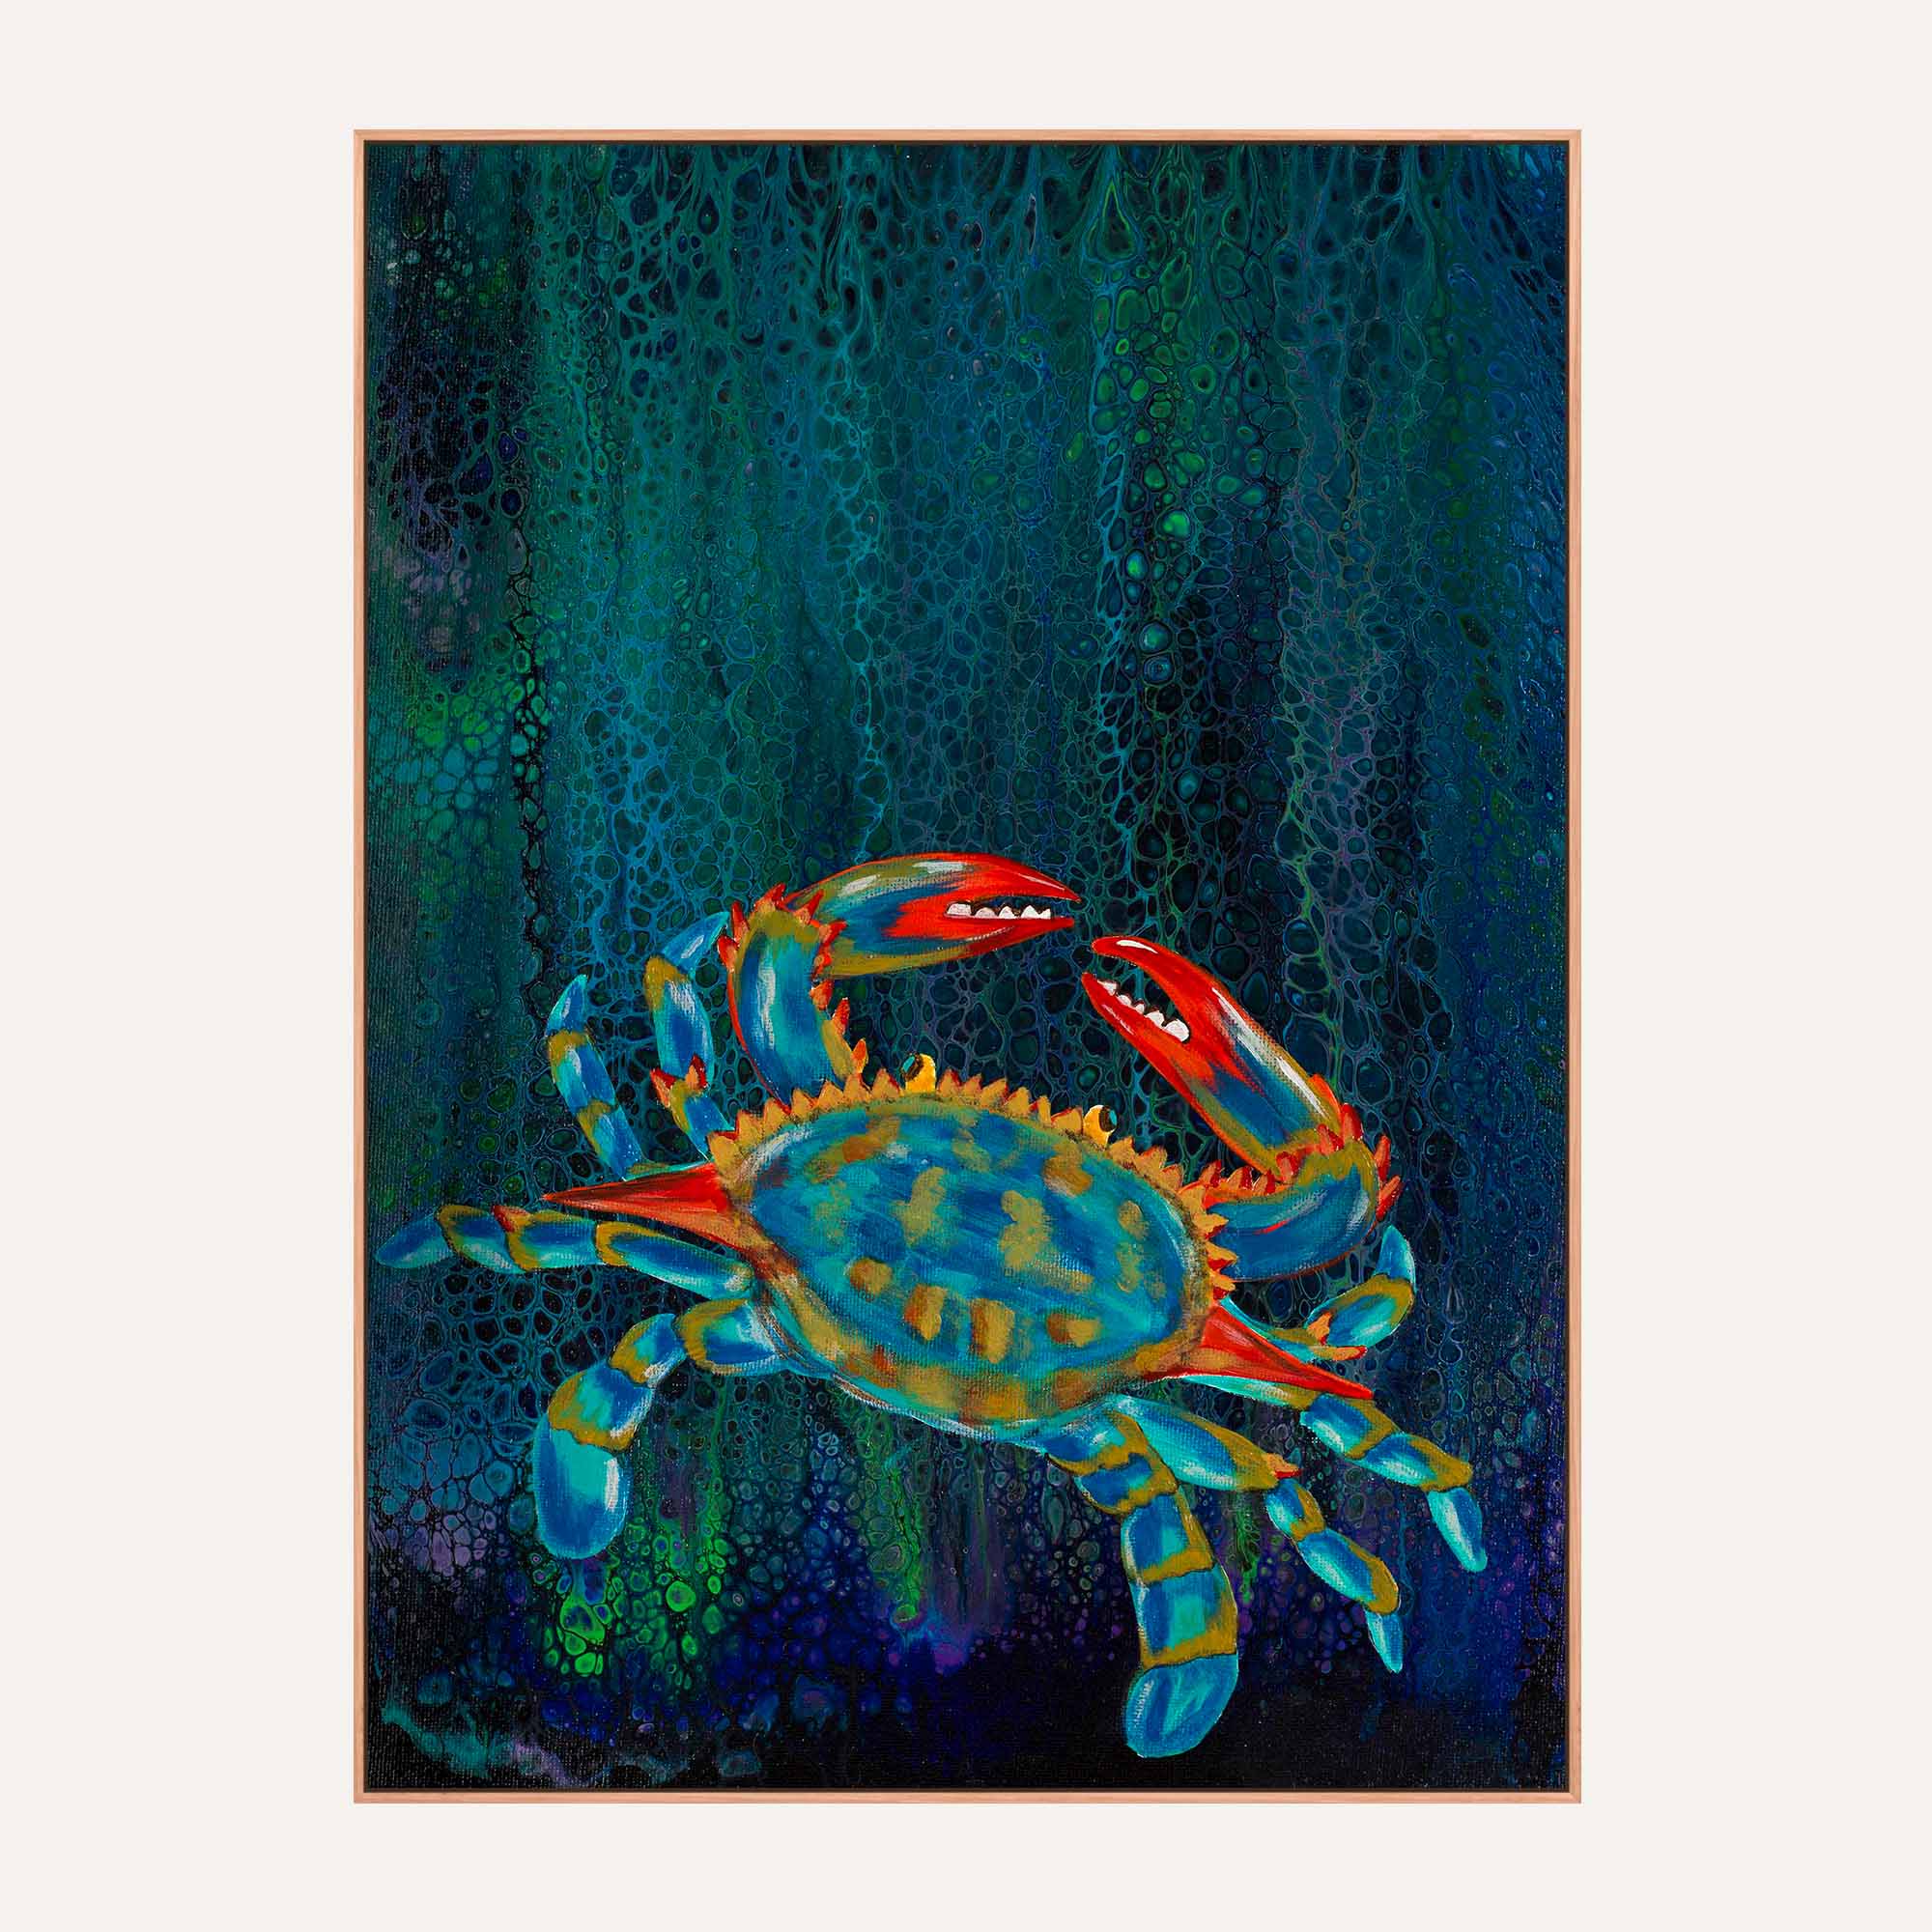 03. Blue Ocean Crab